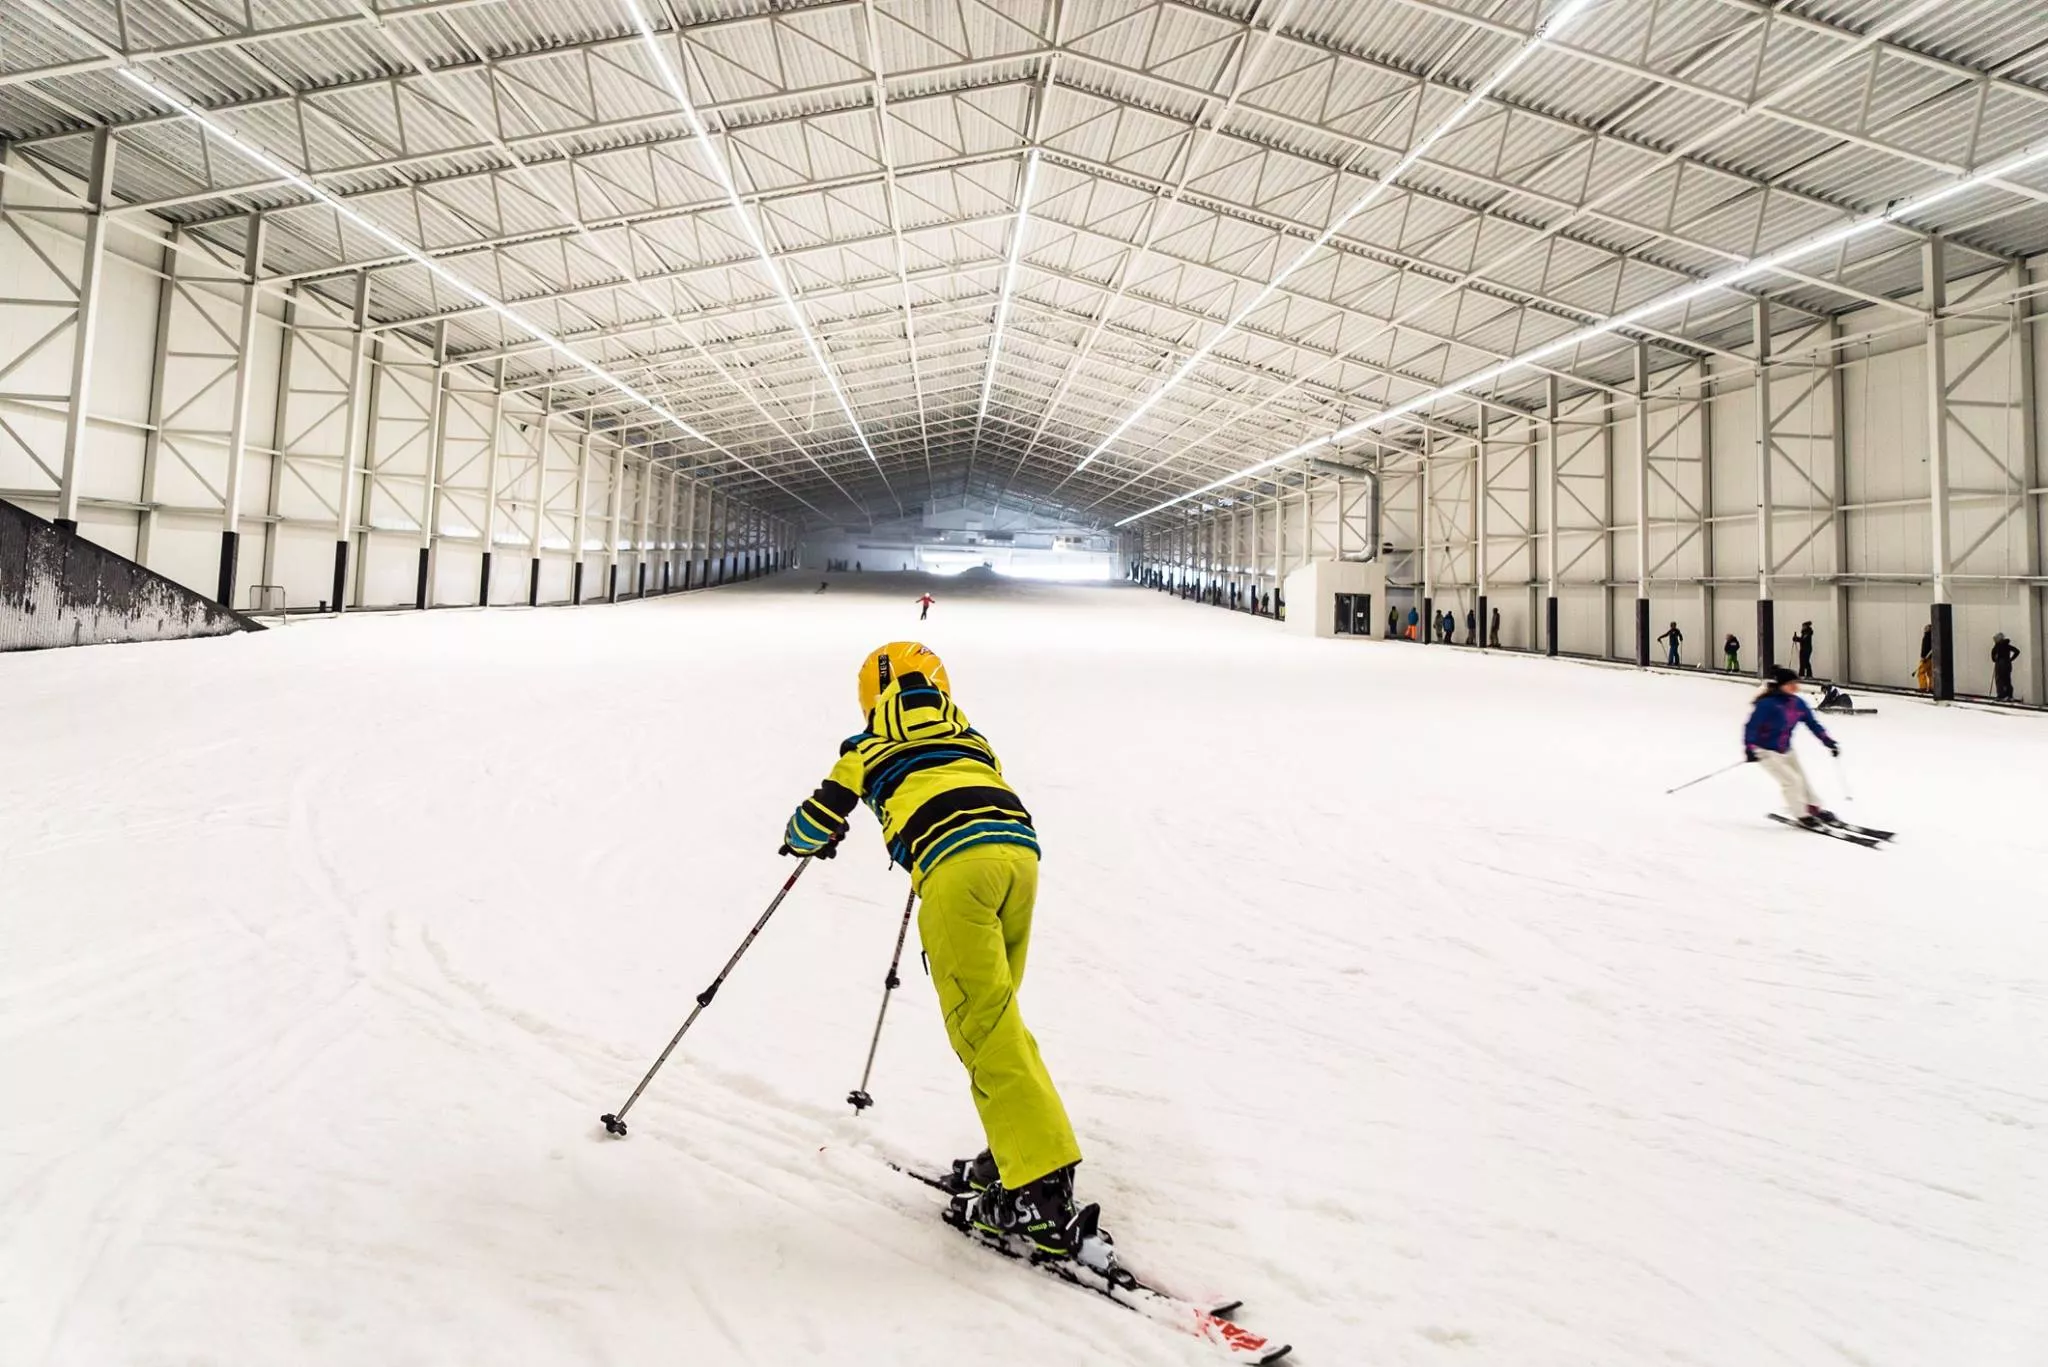 Aspen in Belgium, Europe | Snowboarding,Skiing,Skating - Rated 4.2